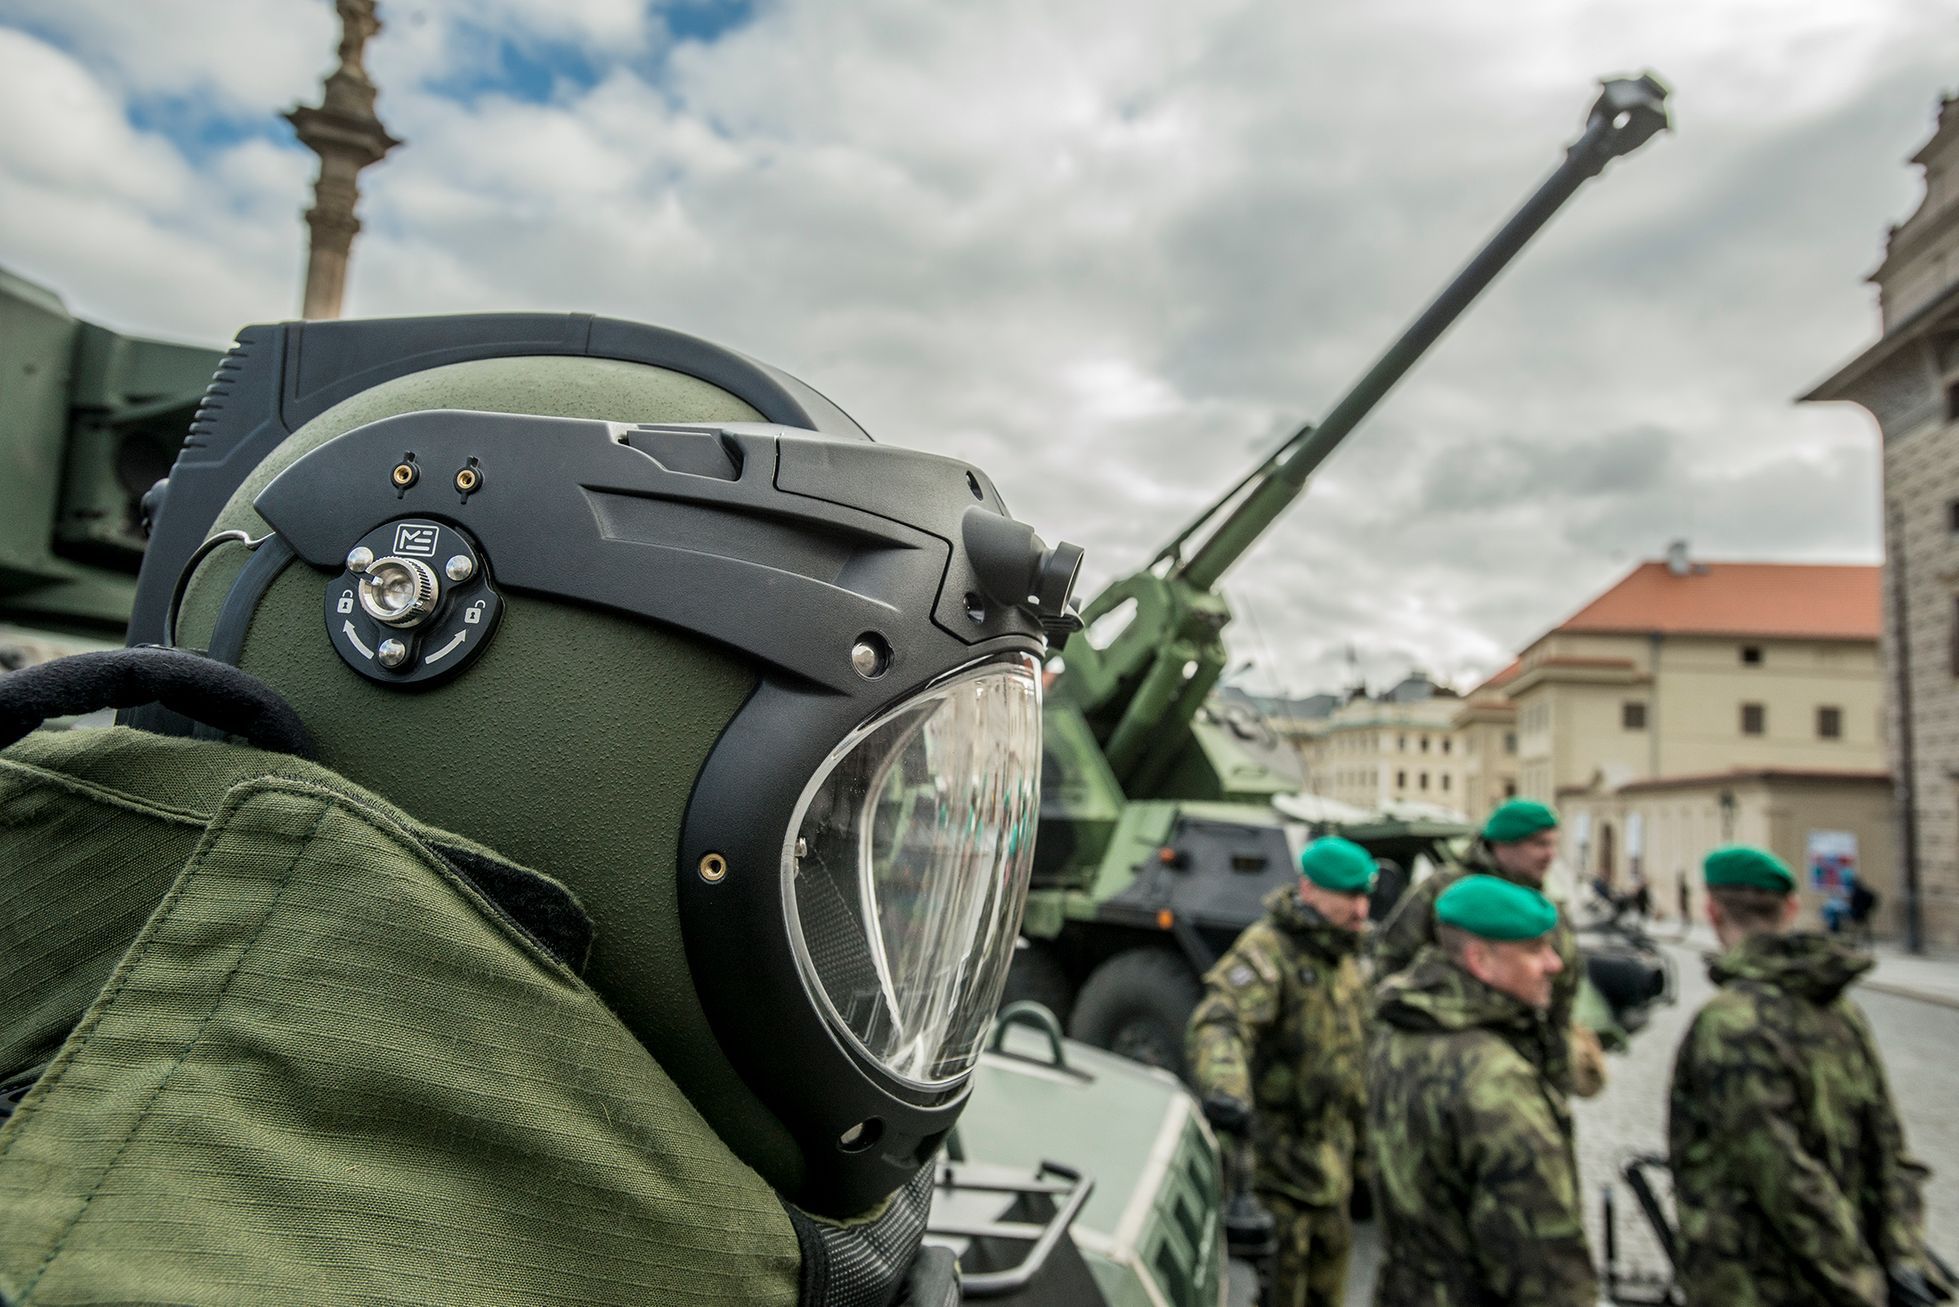 Výstava vojenské techniky Armády České republiky na Hradčanském náměstí